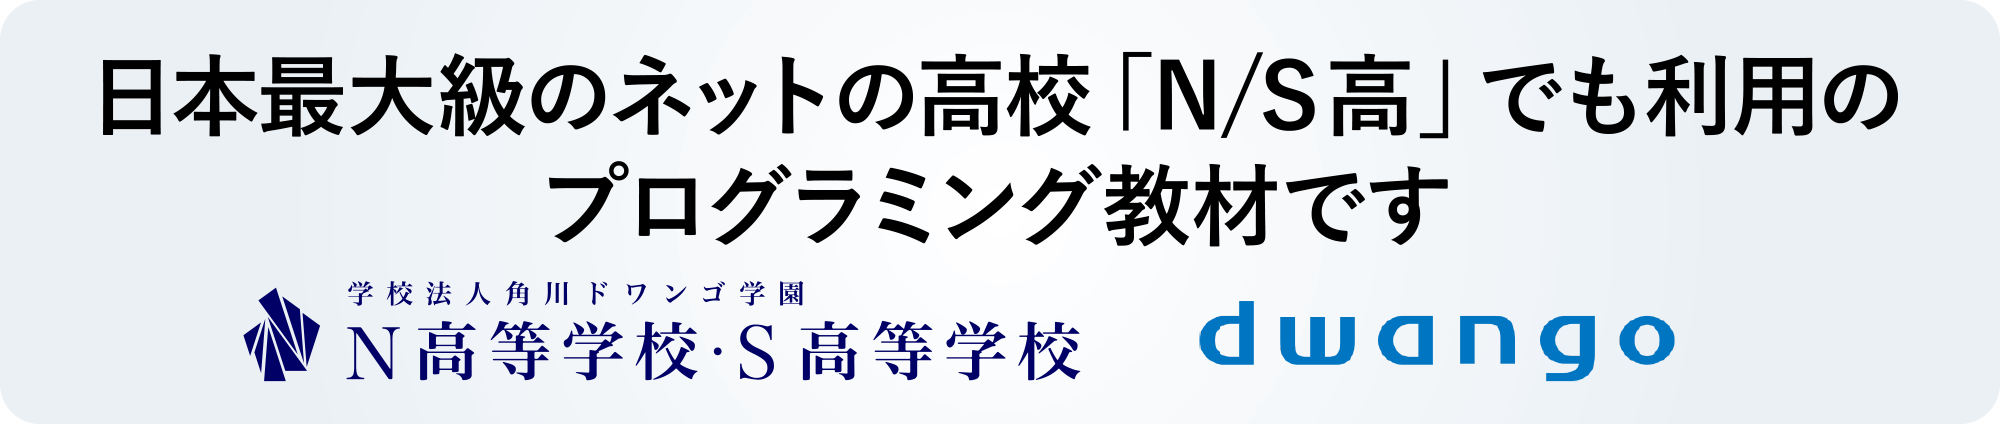 日本最大級のネットの高校「N/S高」でも利用のプログラミング教材です